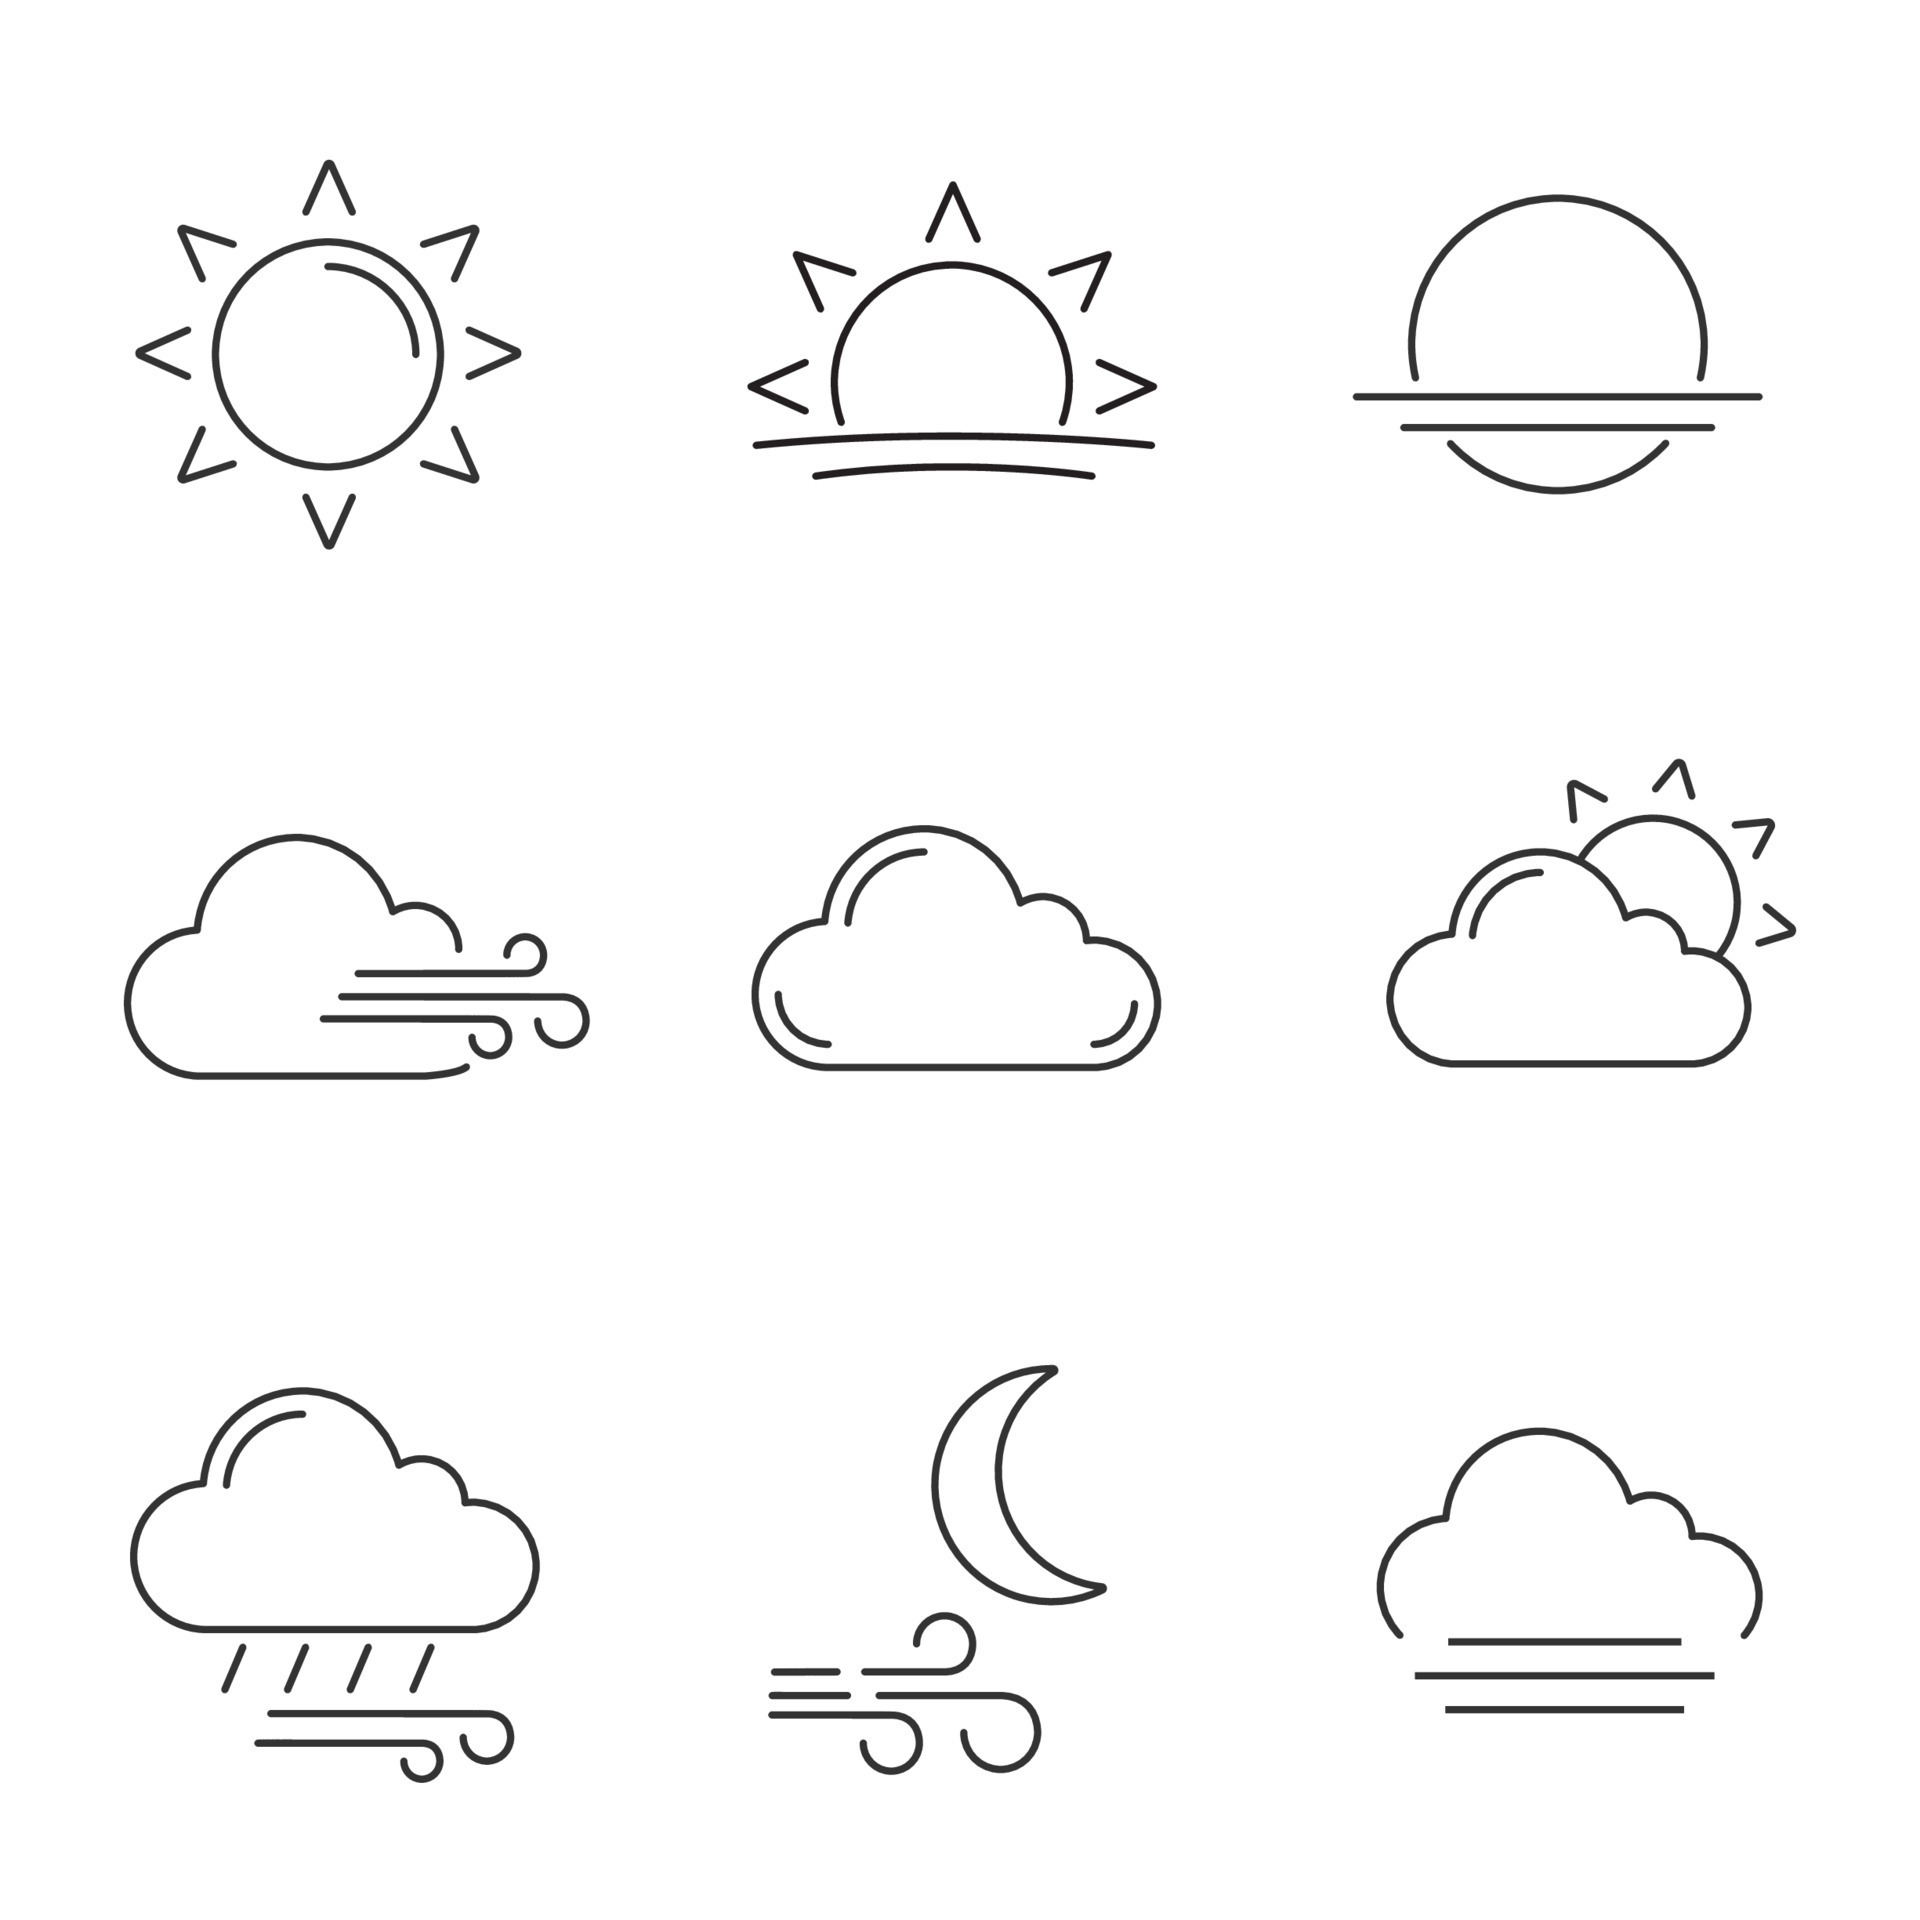 Weather forecast linear icons set. Sun, sunrise, sunset, wind